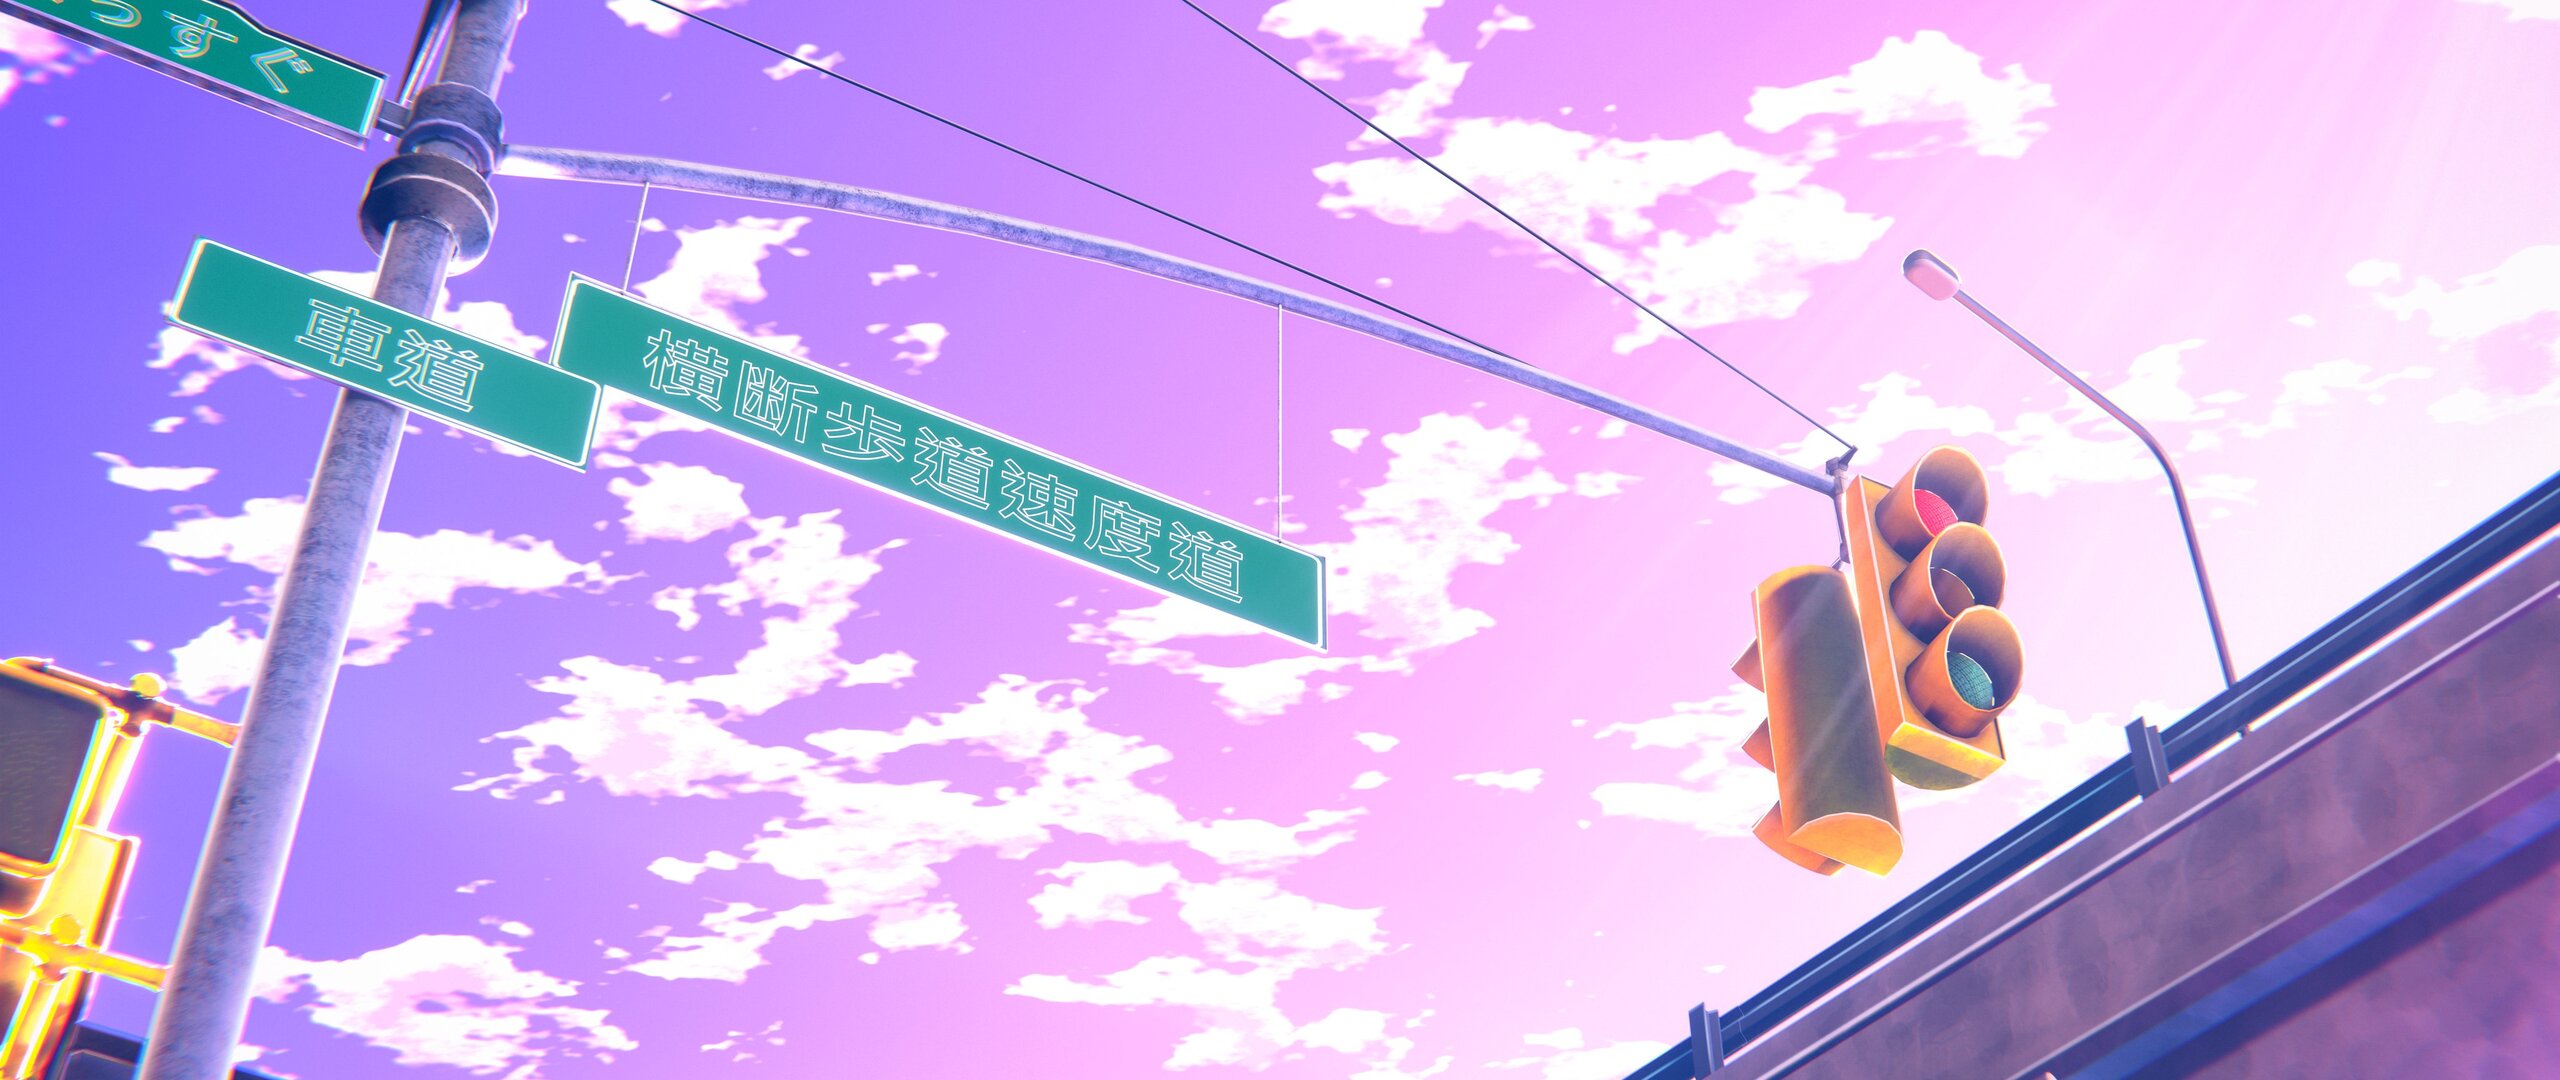 traffic-lights-anime-4k-jg.jpg